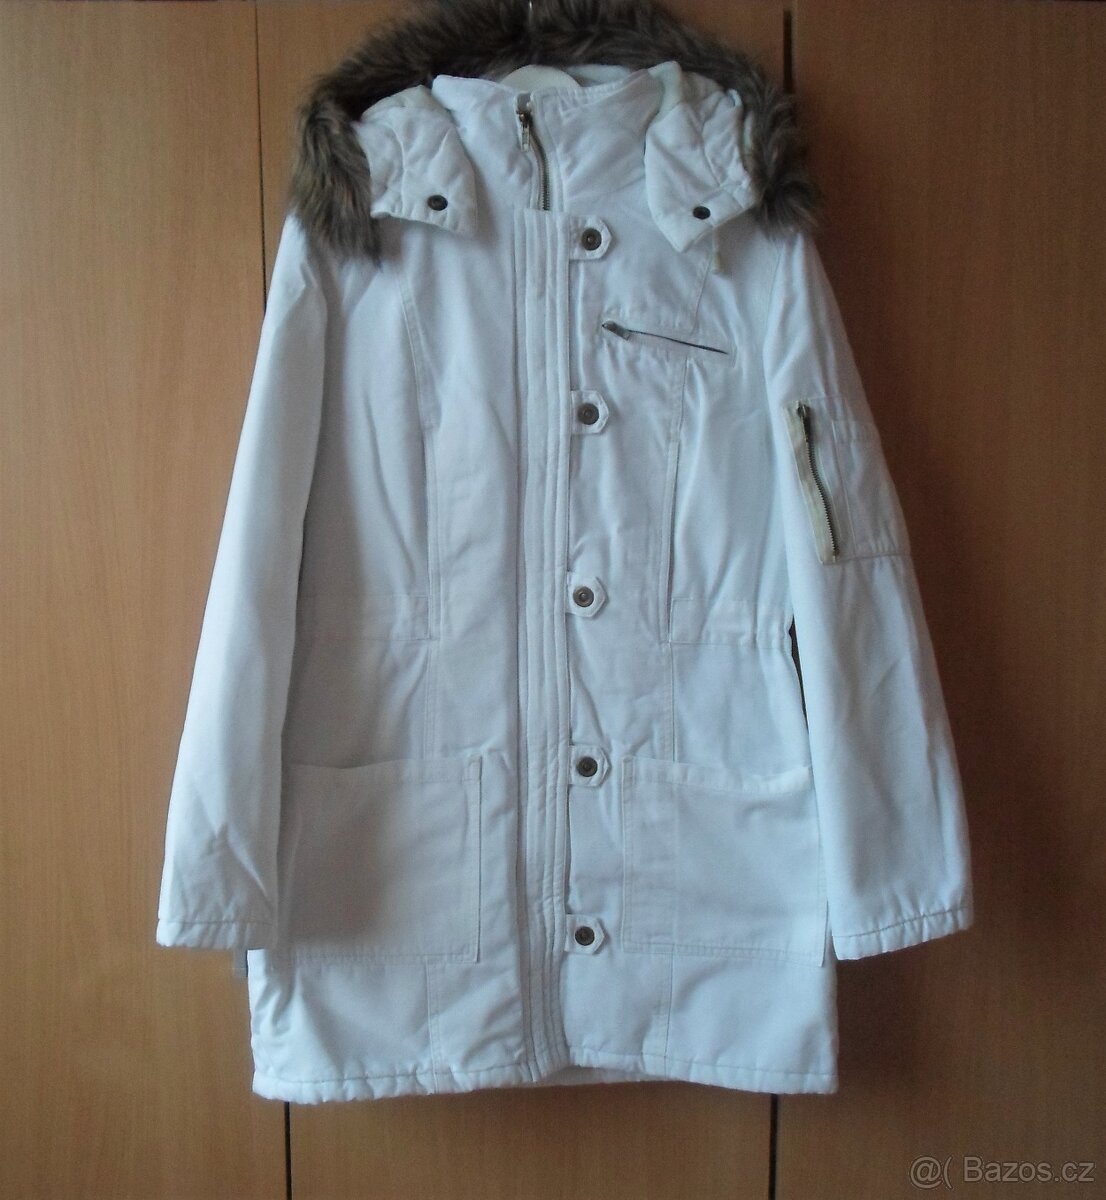 Bílá bunda kabát kabátek parka - L, 40